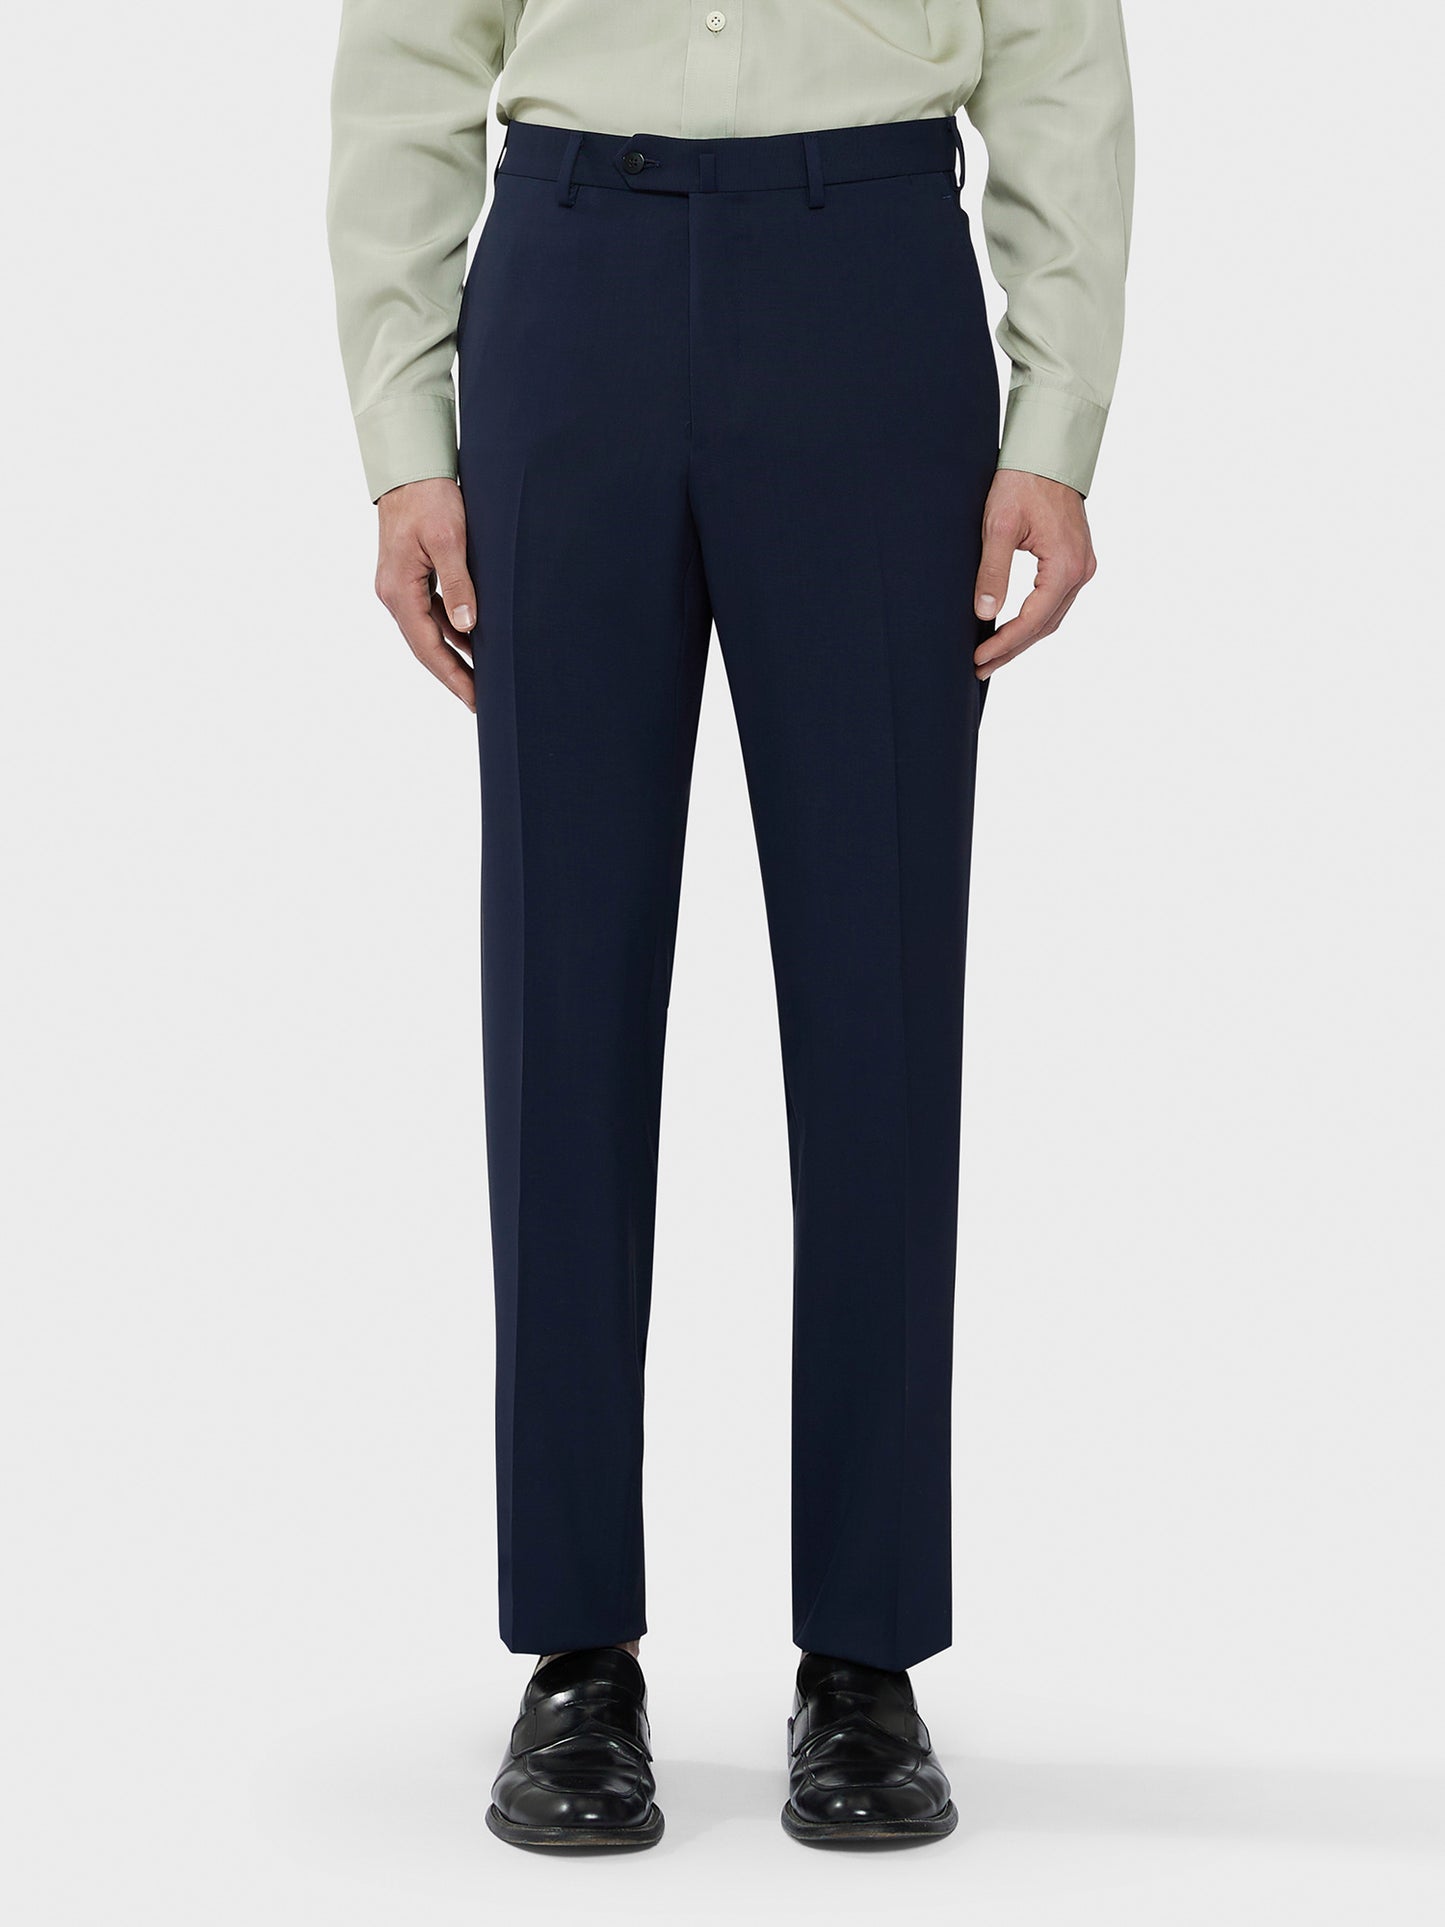 Caruso Menswear Abbigliamento Uomo Abito Norma in tropical di lana blu "Houdini" drop 7R dettaglio pantaloni